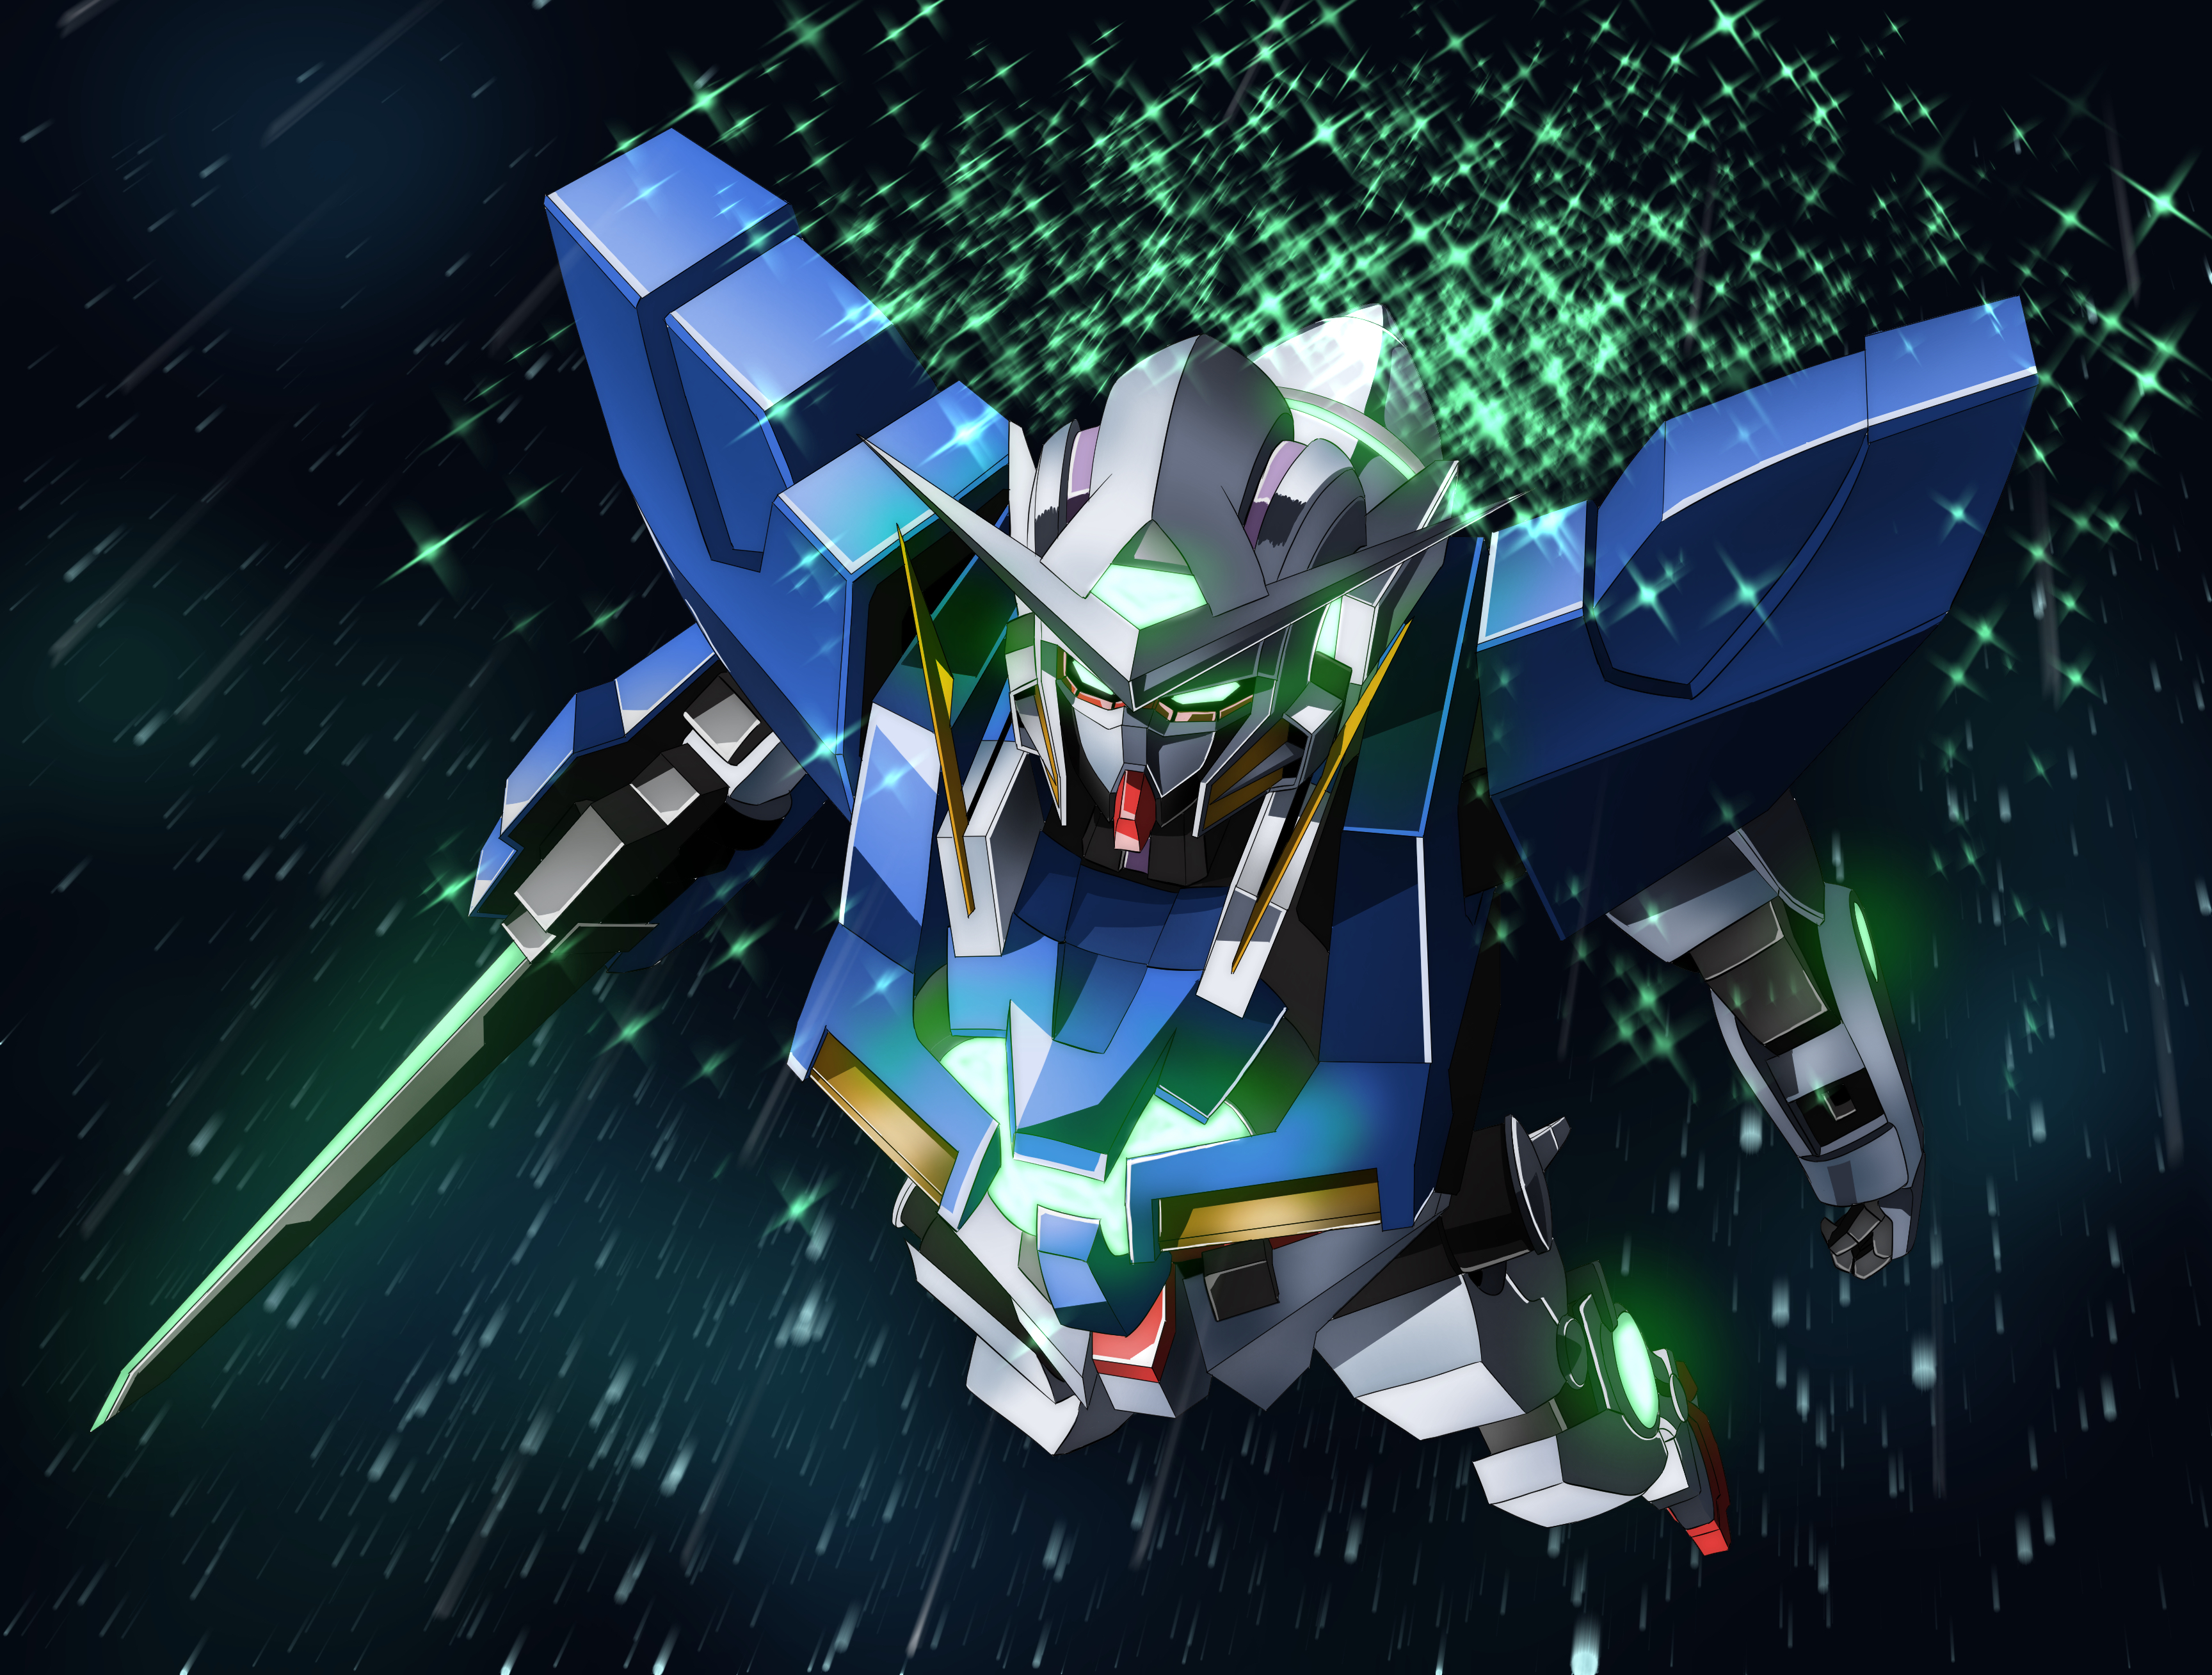 Anime Robot Gundam Mobile Suit Gundam 00 Super Robot Wars Gundam Exia Artwork Digital Art Fan Art 3456x2617